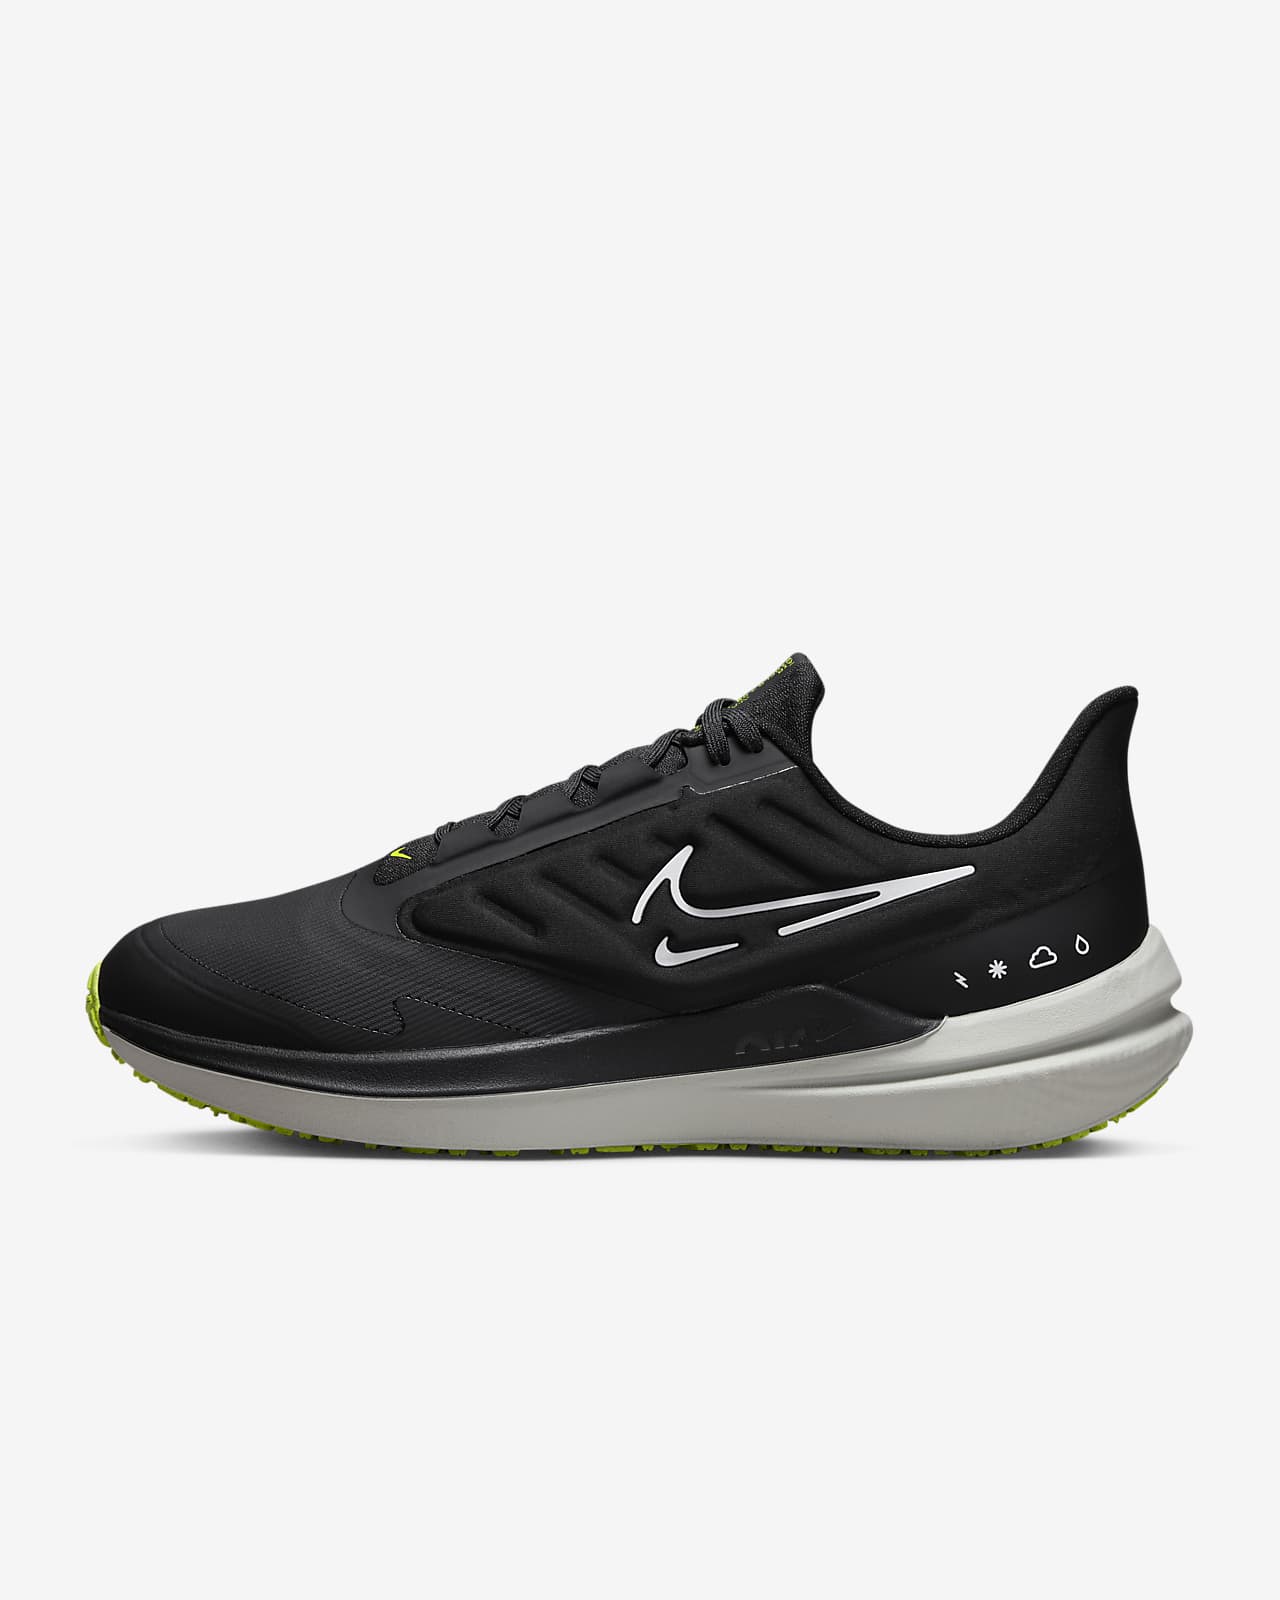 Ανδρικά παπούτσια με προστασία από τις καιρικές συνθήκες για τρέξιμο σε δρόμο Nike Air Winflo 9 Shield